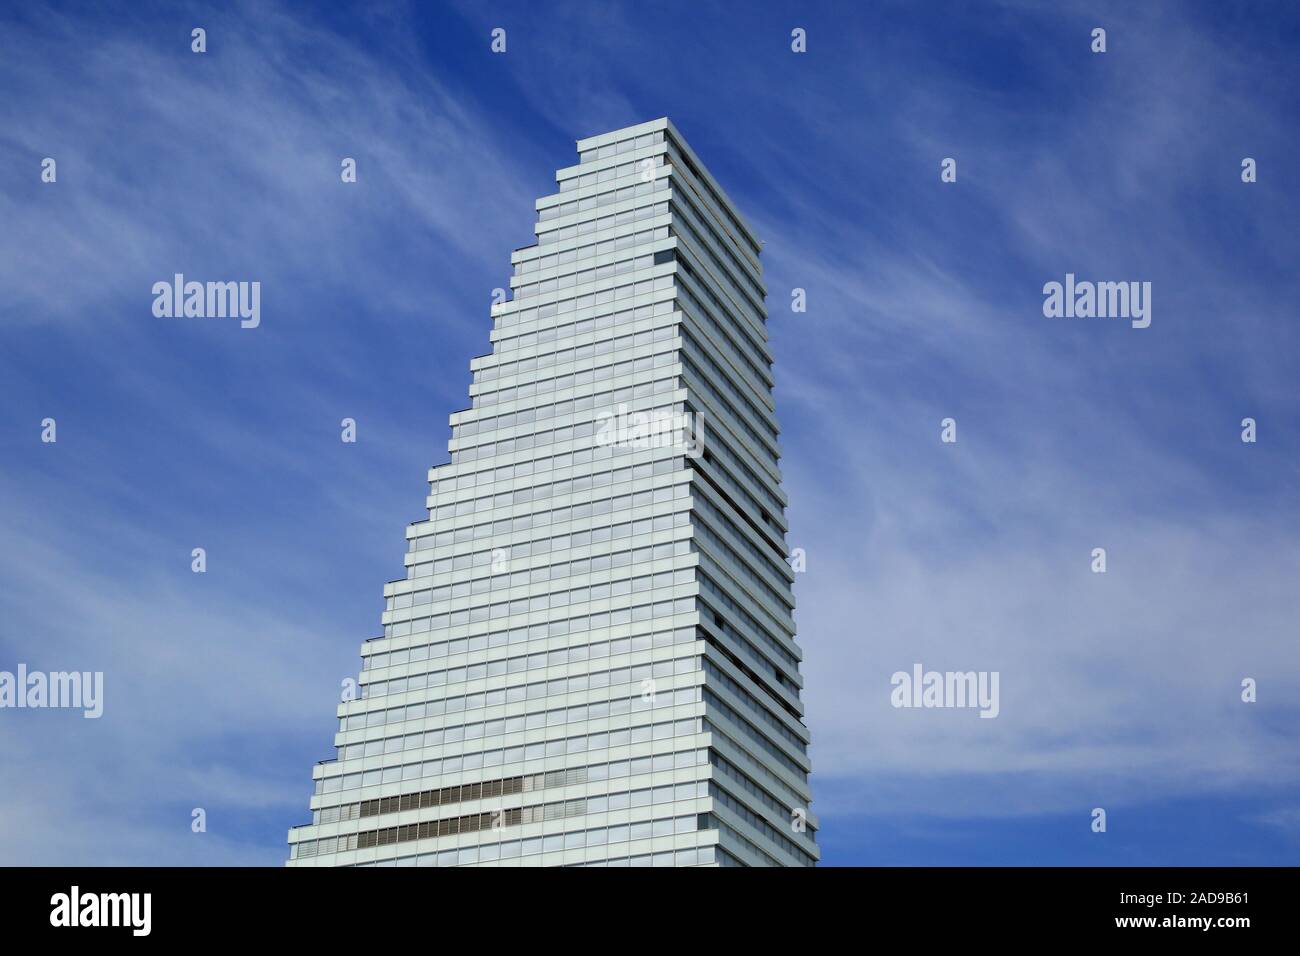 Bâle, immeuble de grande hauteur de l'entreprise pharmaceutique Roche Banque D'Images